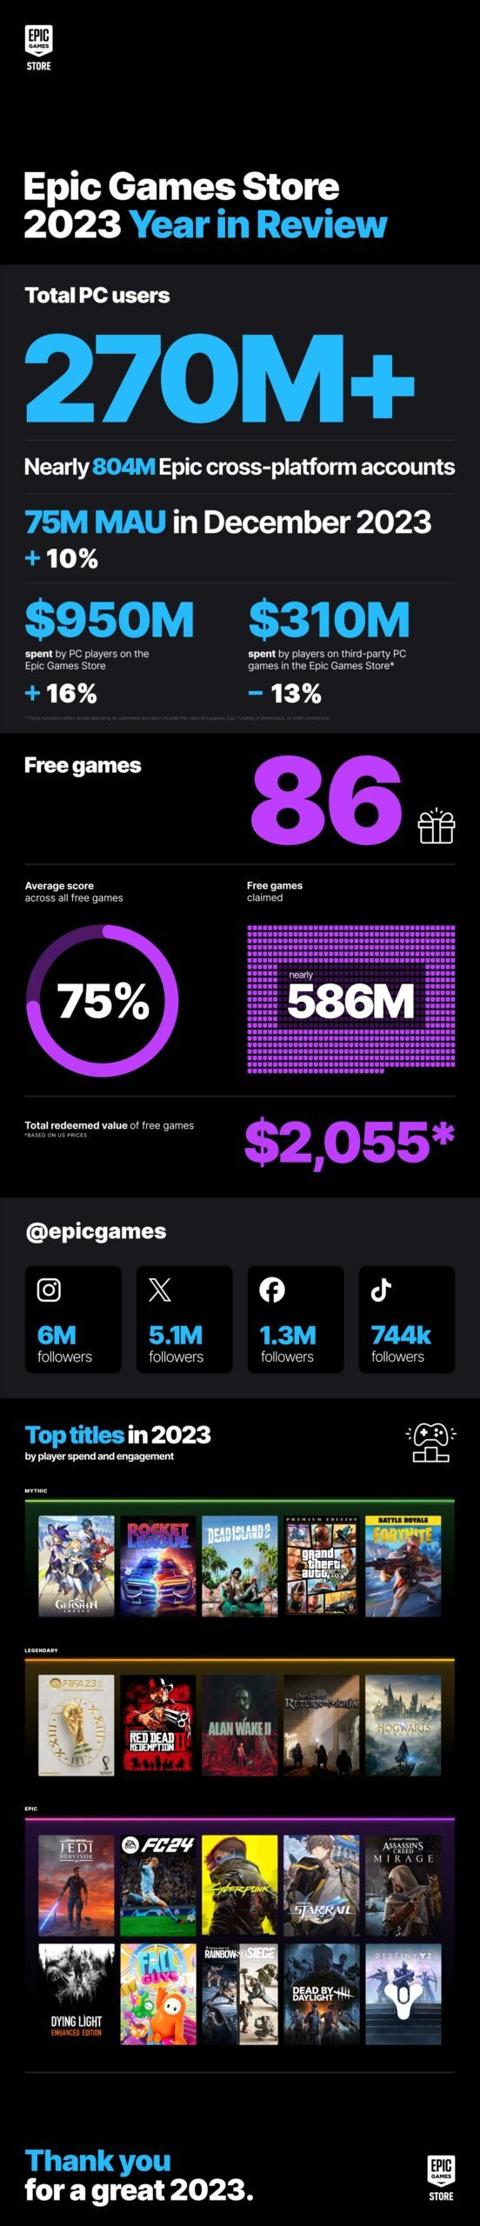 نمو عدد مستخدمي متجر Epic Games في 2023 بفضل